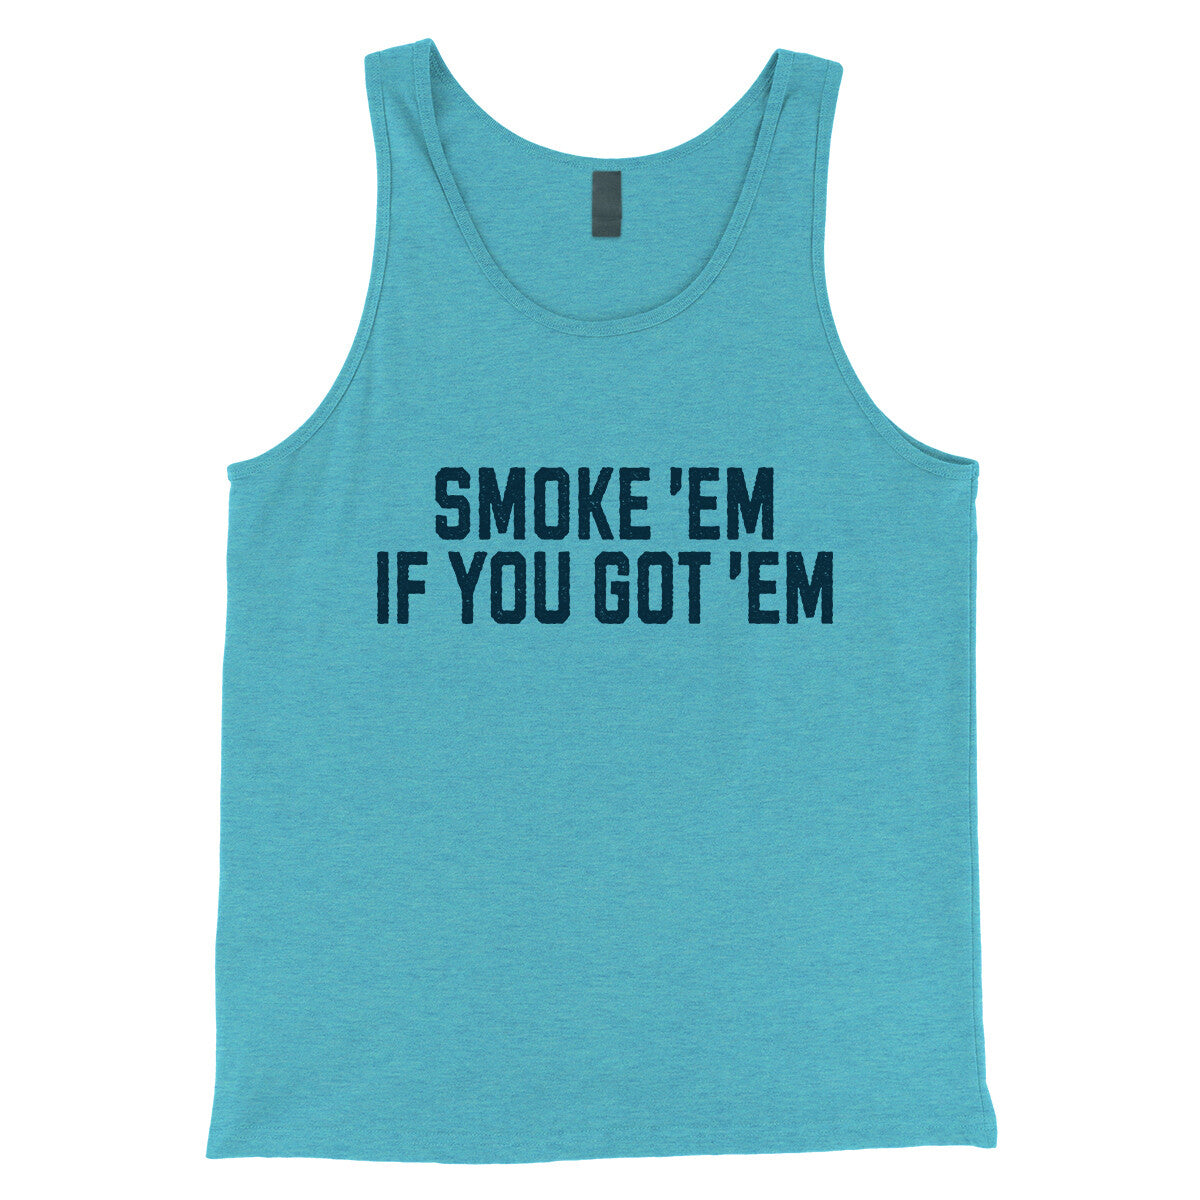 Smoke ‘em If you Got ‘em in Aqua Triblend Color